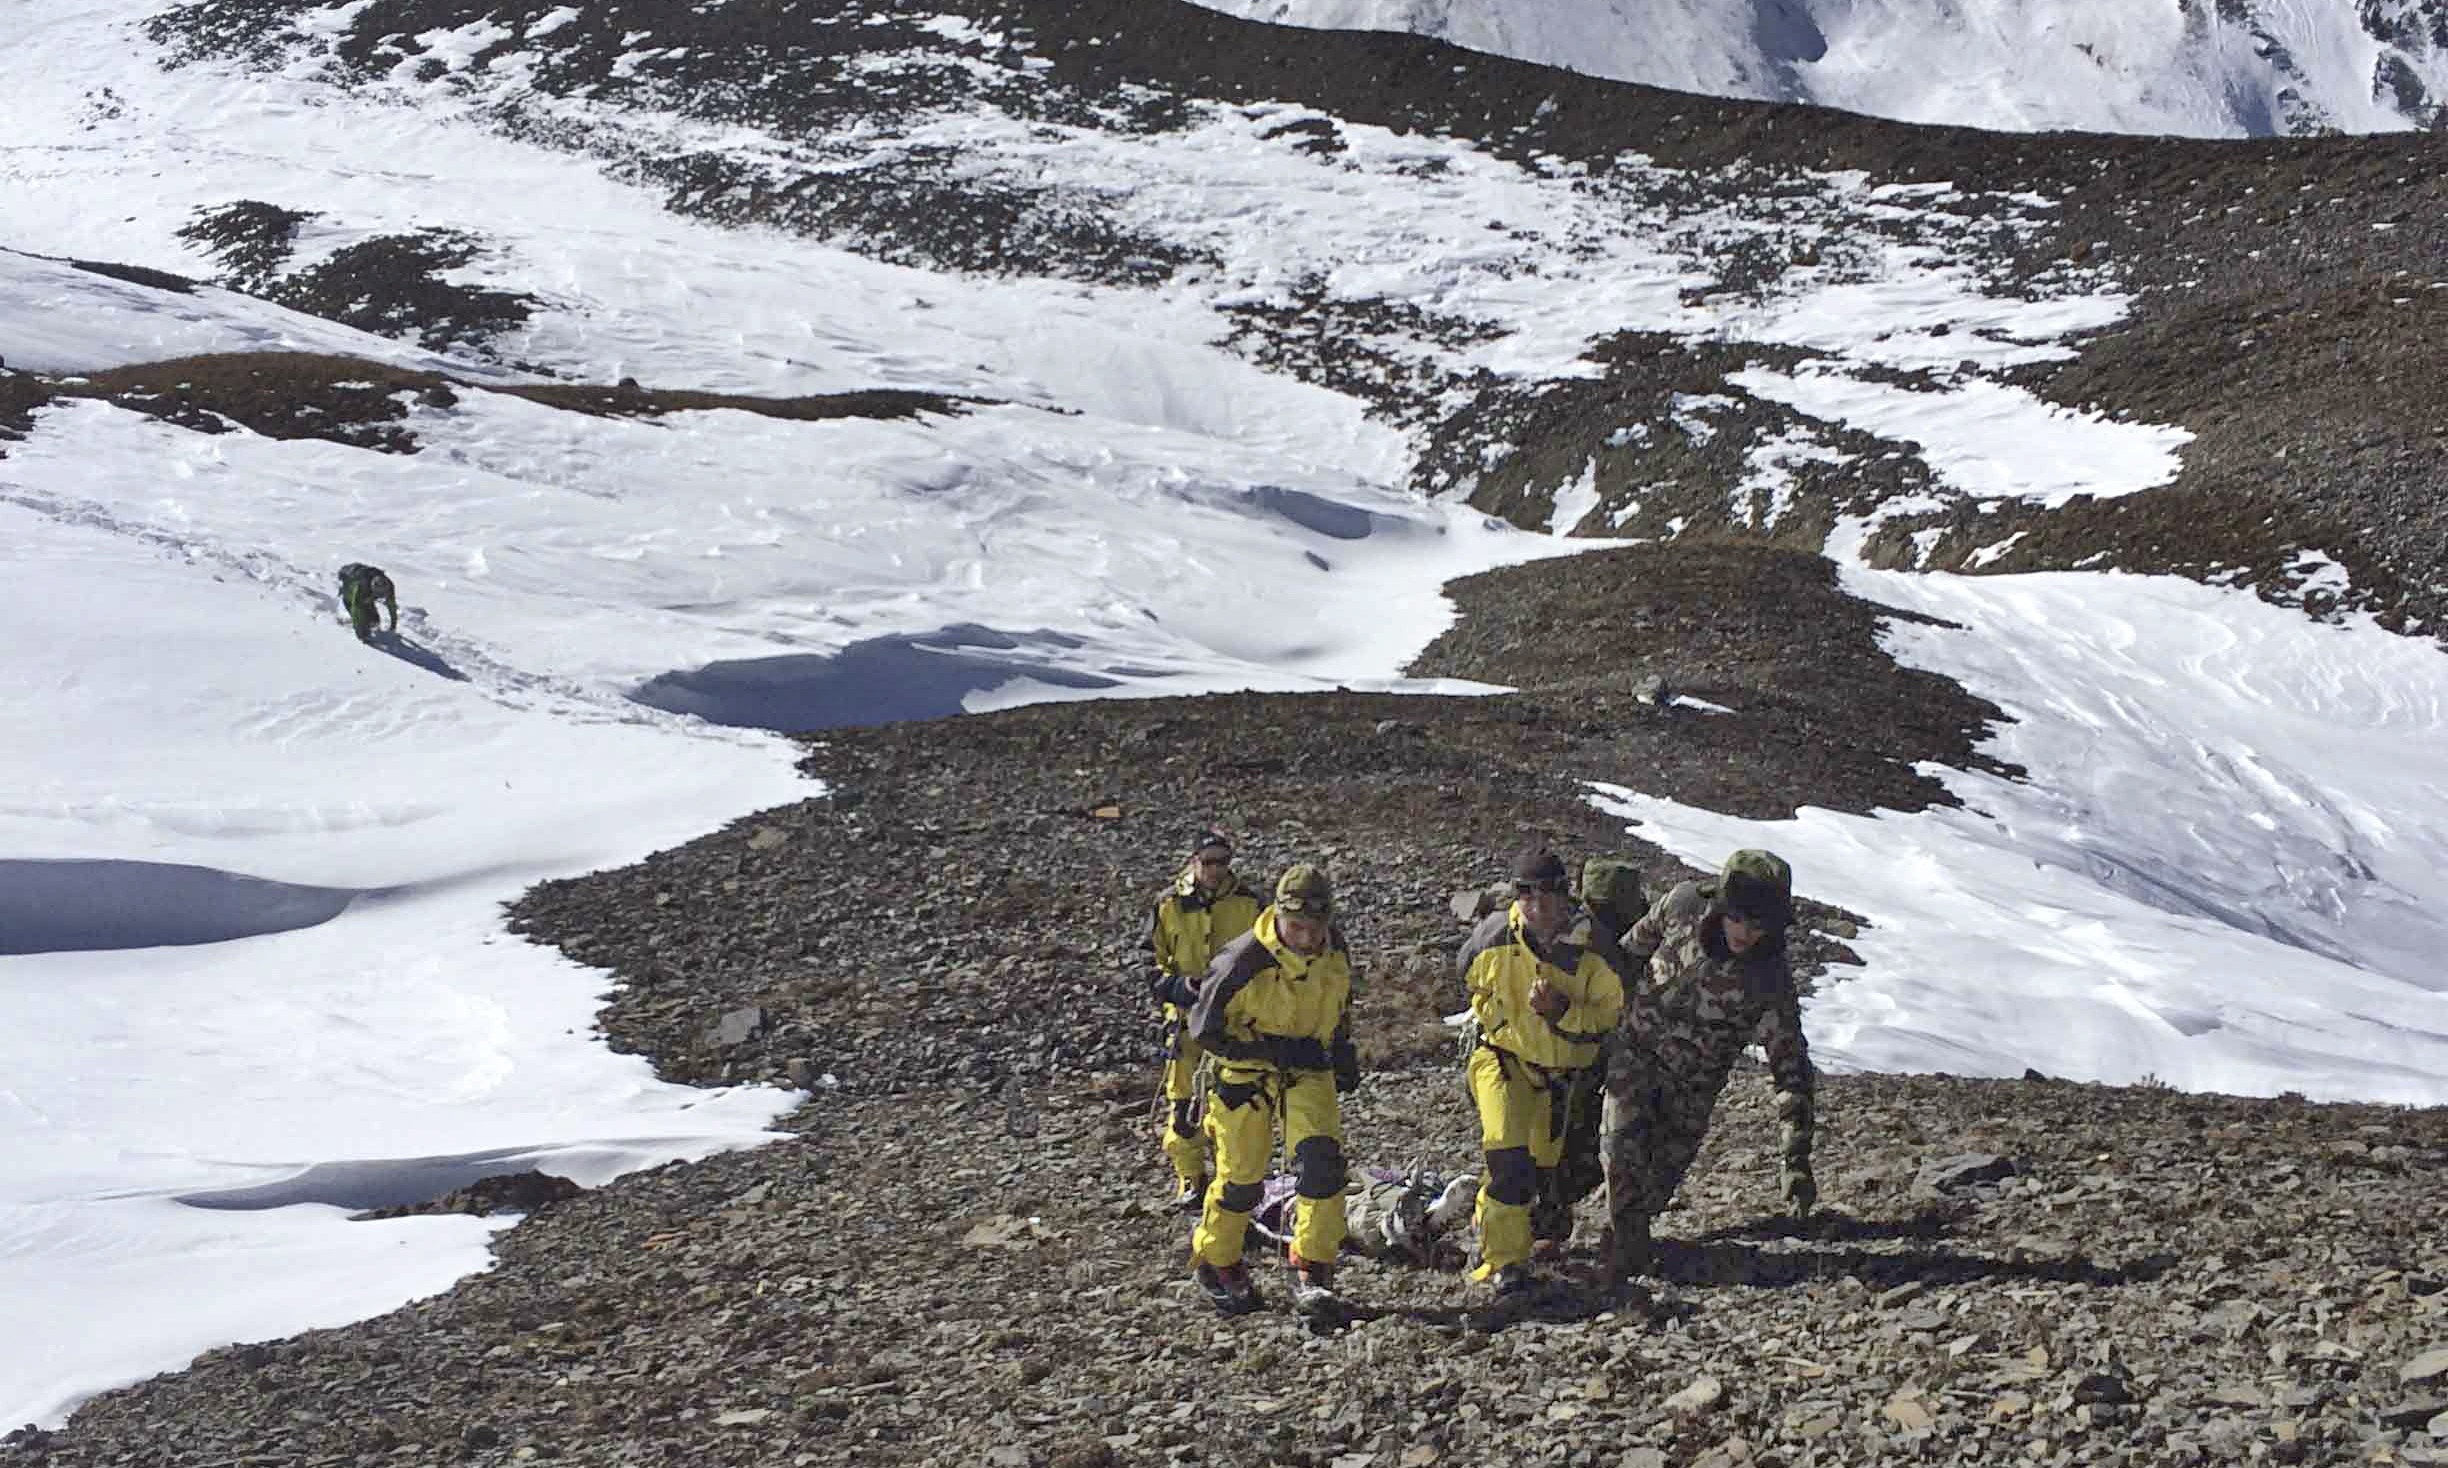 Nepal blizzard survivor tells of friends’ deaths on Annapurna circuit